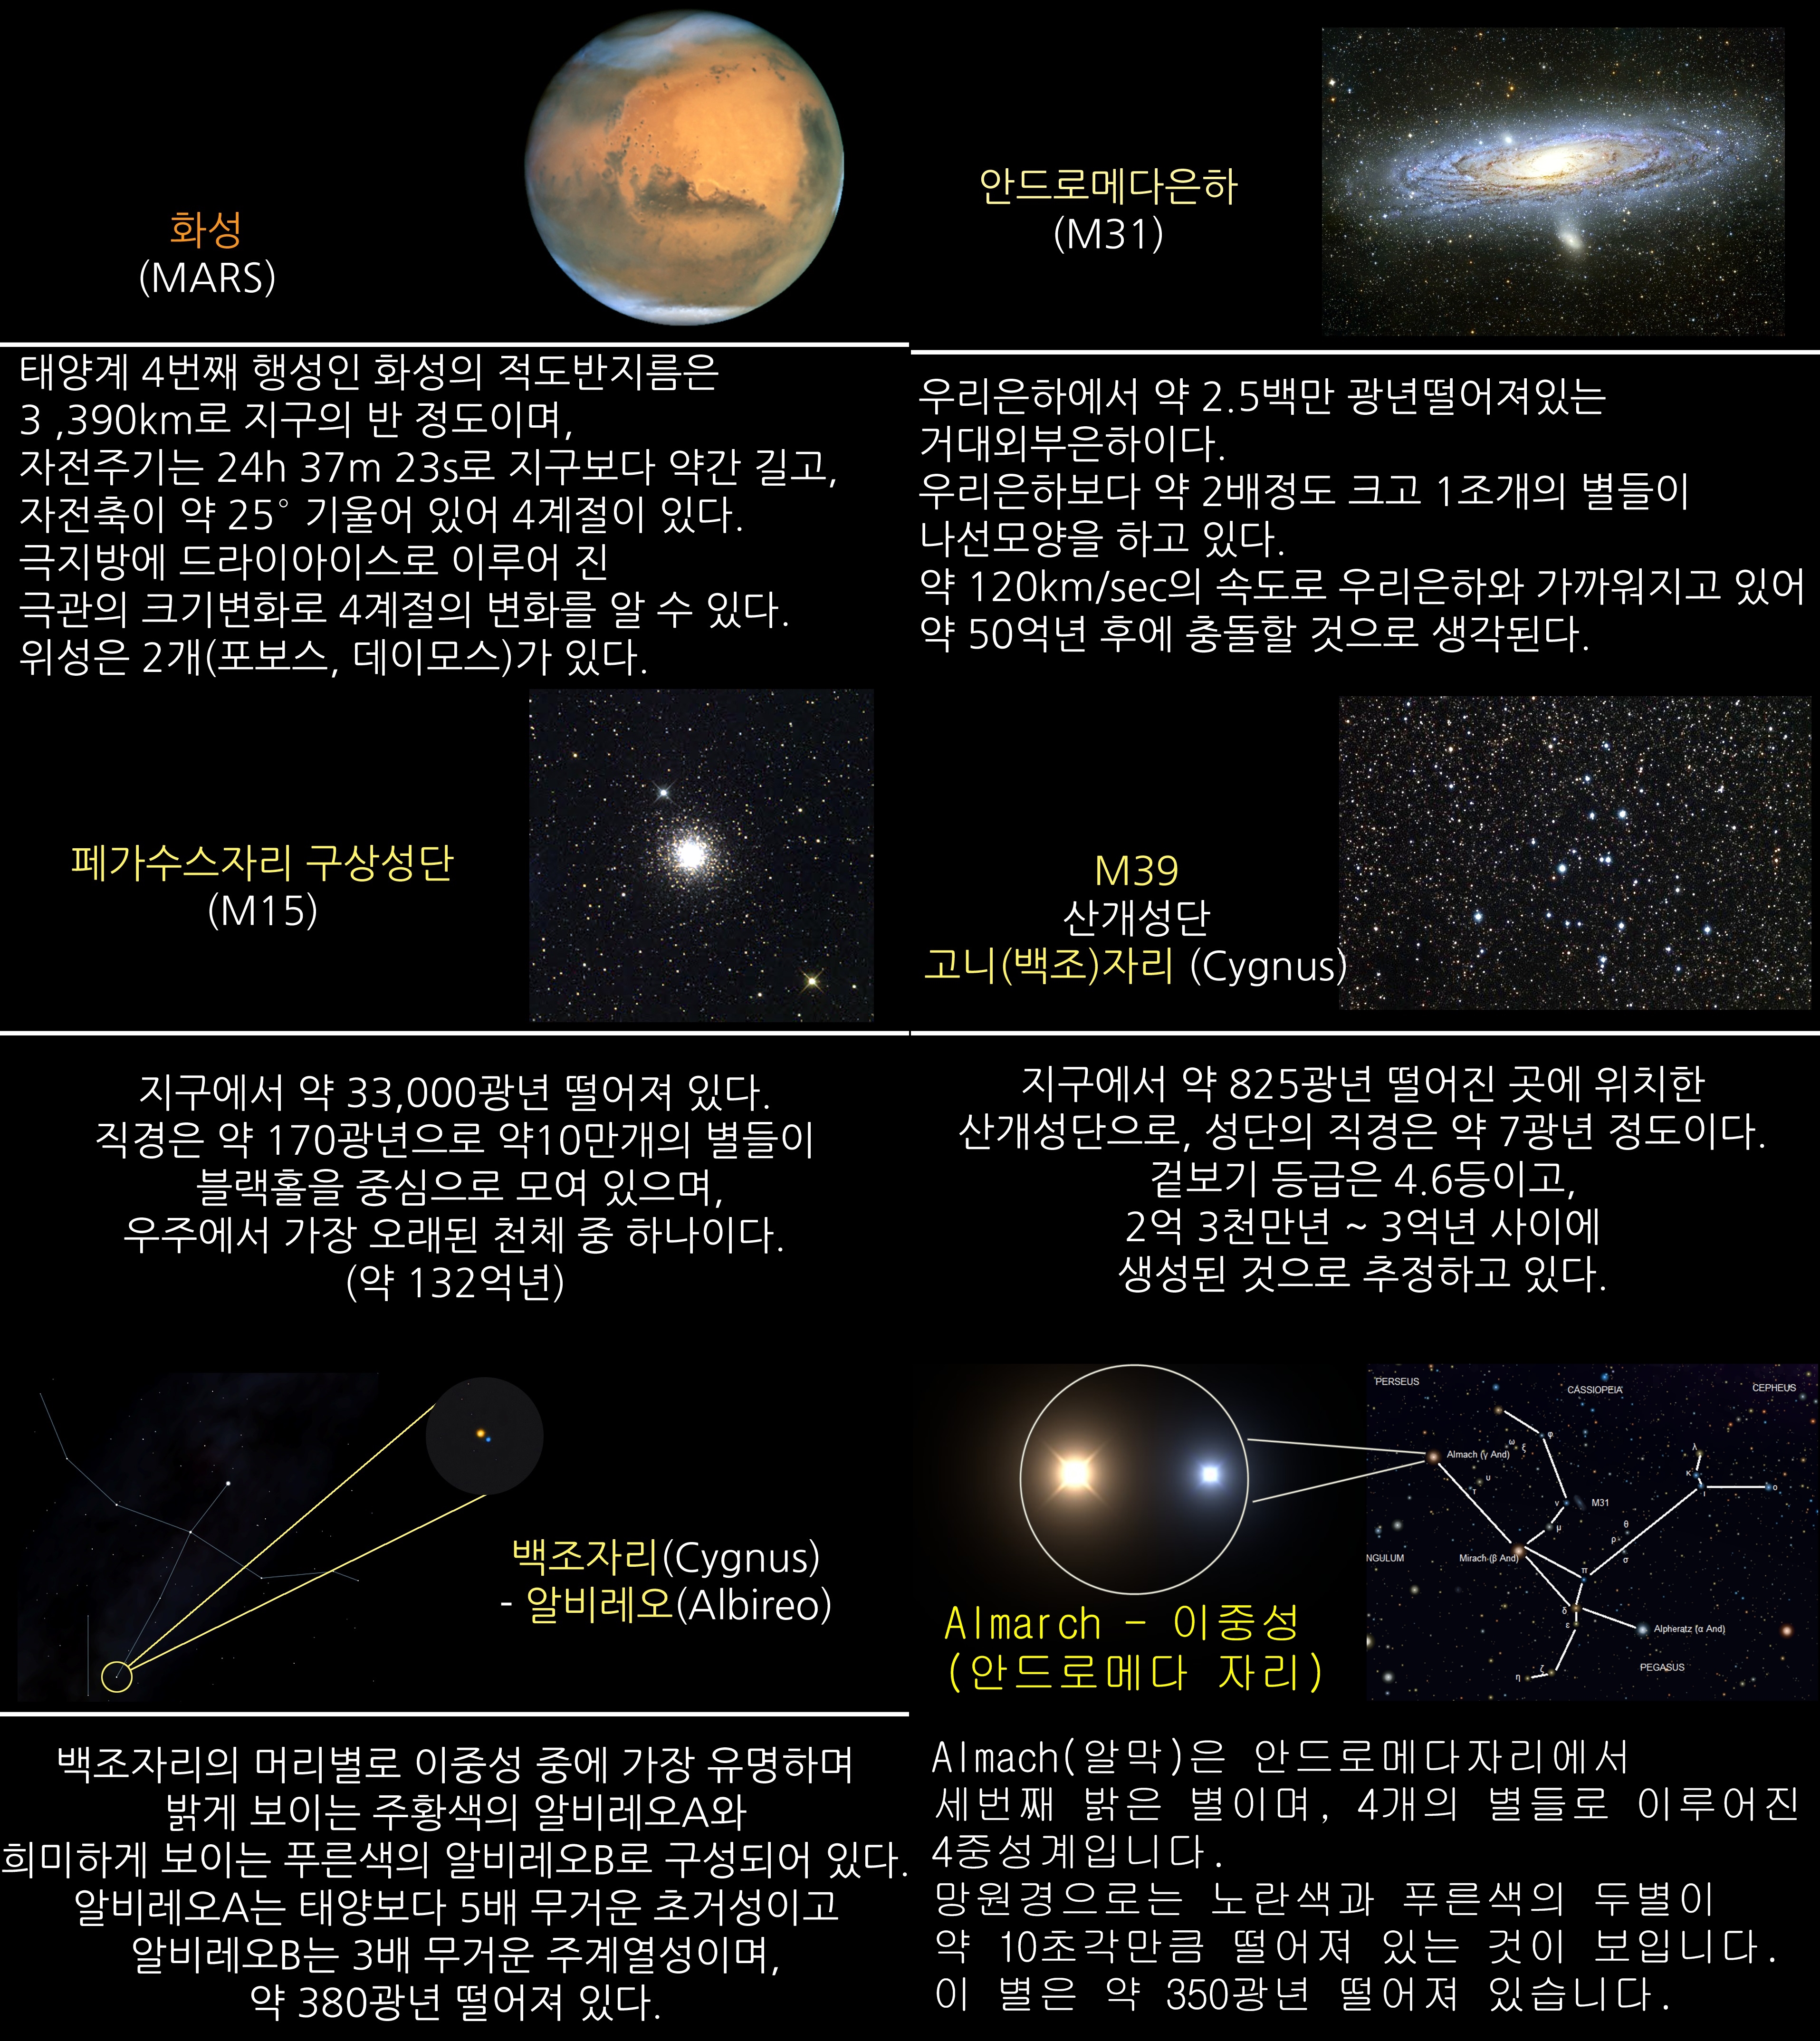 2018년 10월 주요 천체관측 대상